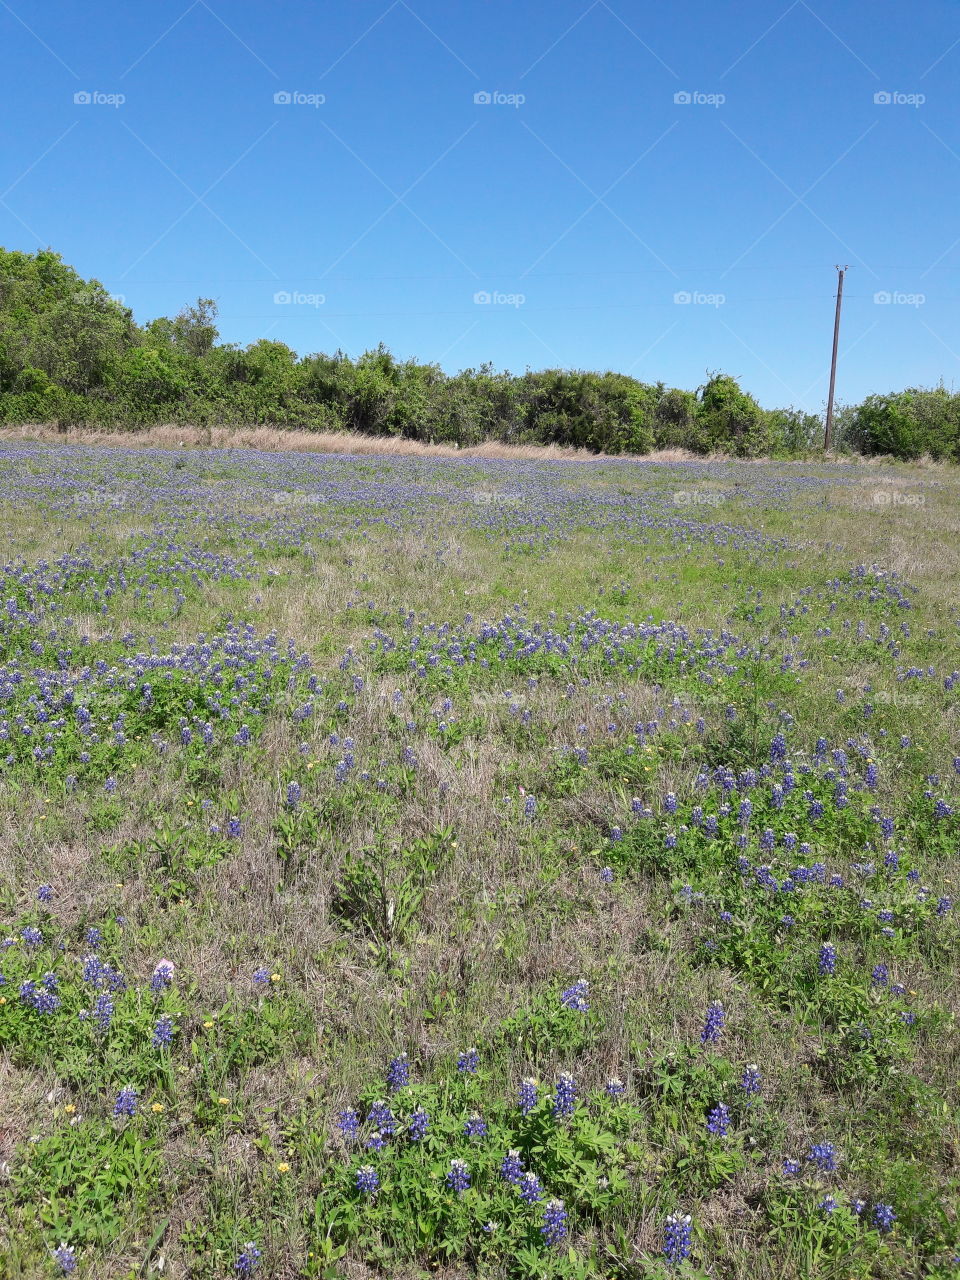 Field of Bluebonnets.